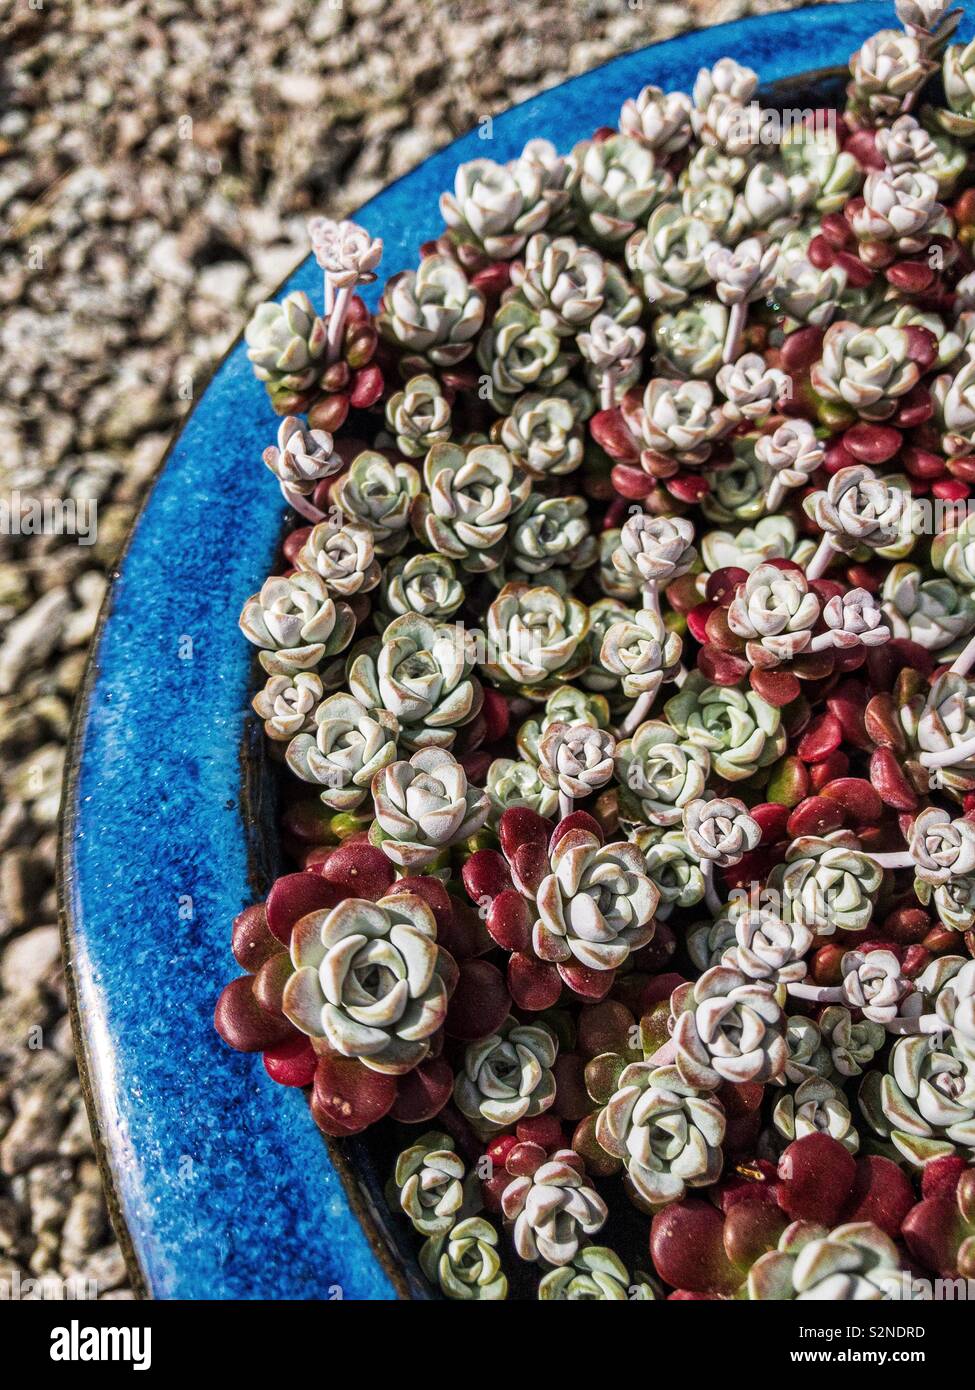 Sedum spathulifolium Cappa Blanca in a blue pot. Stock Photo